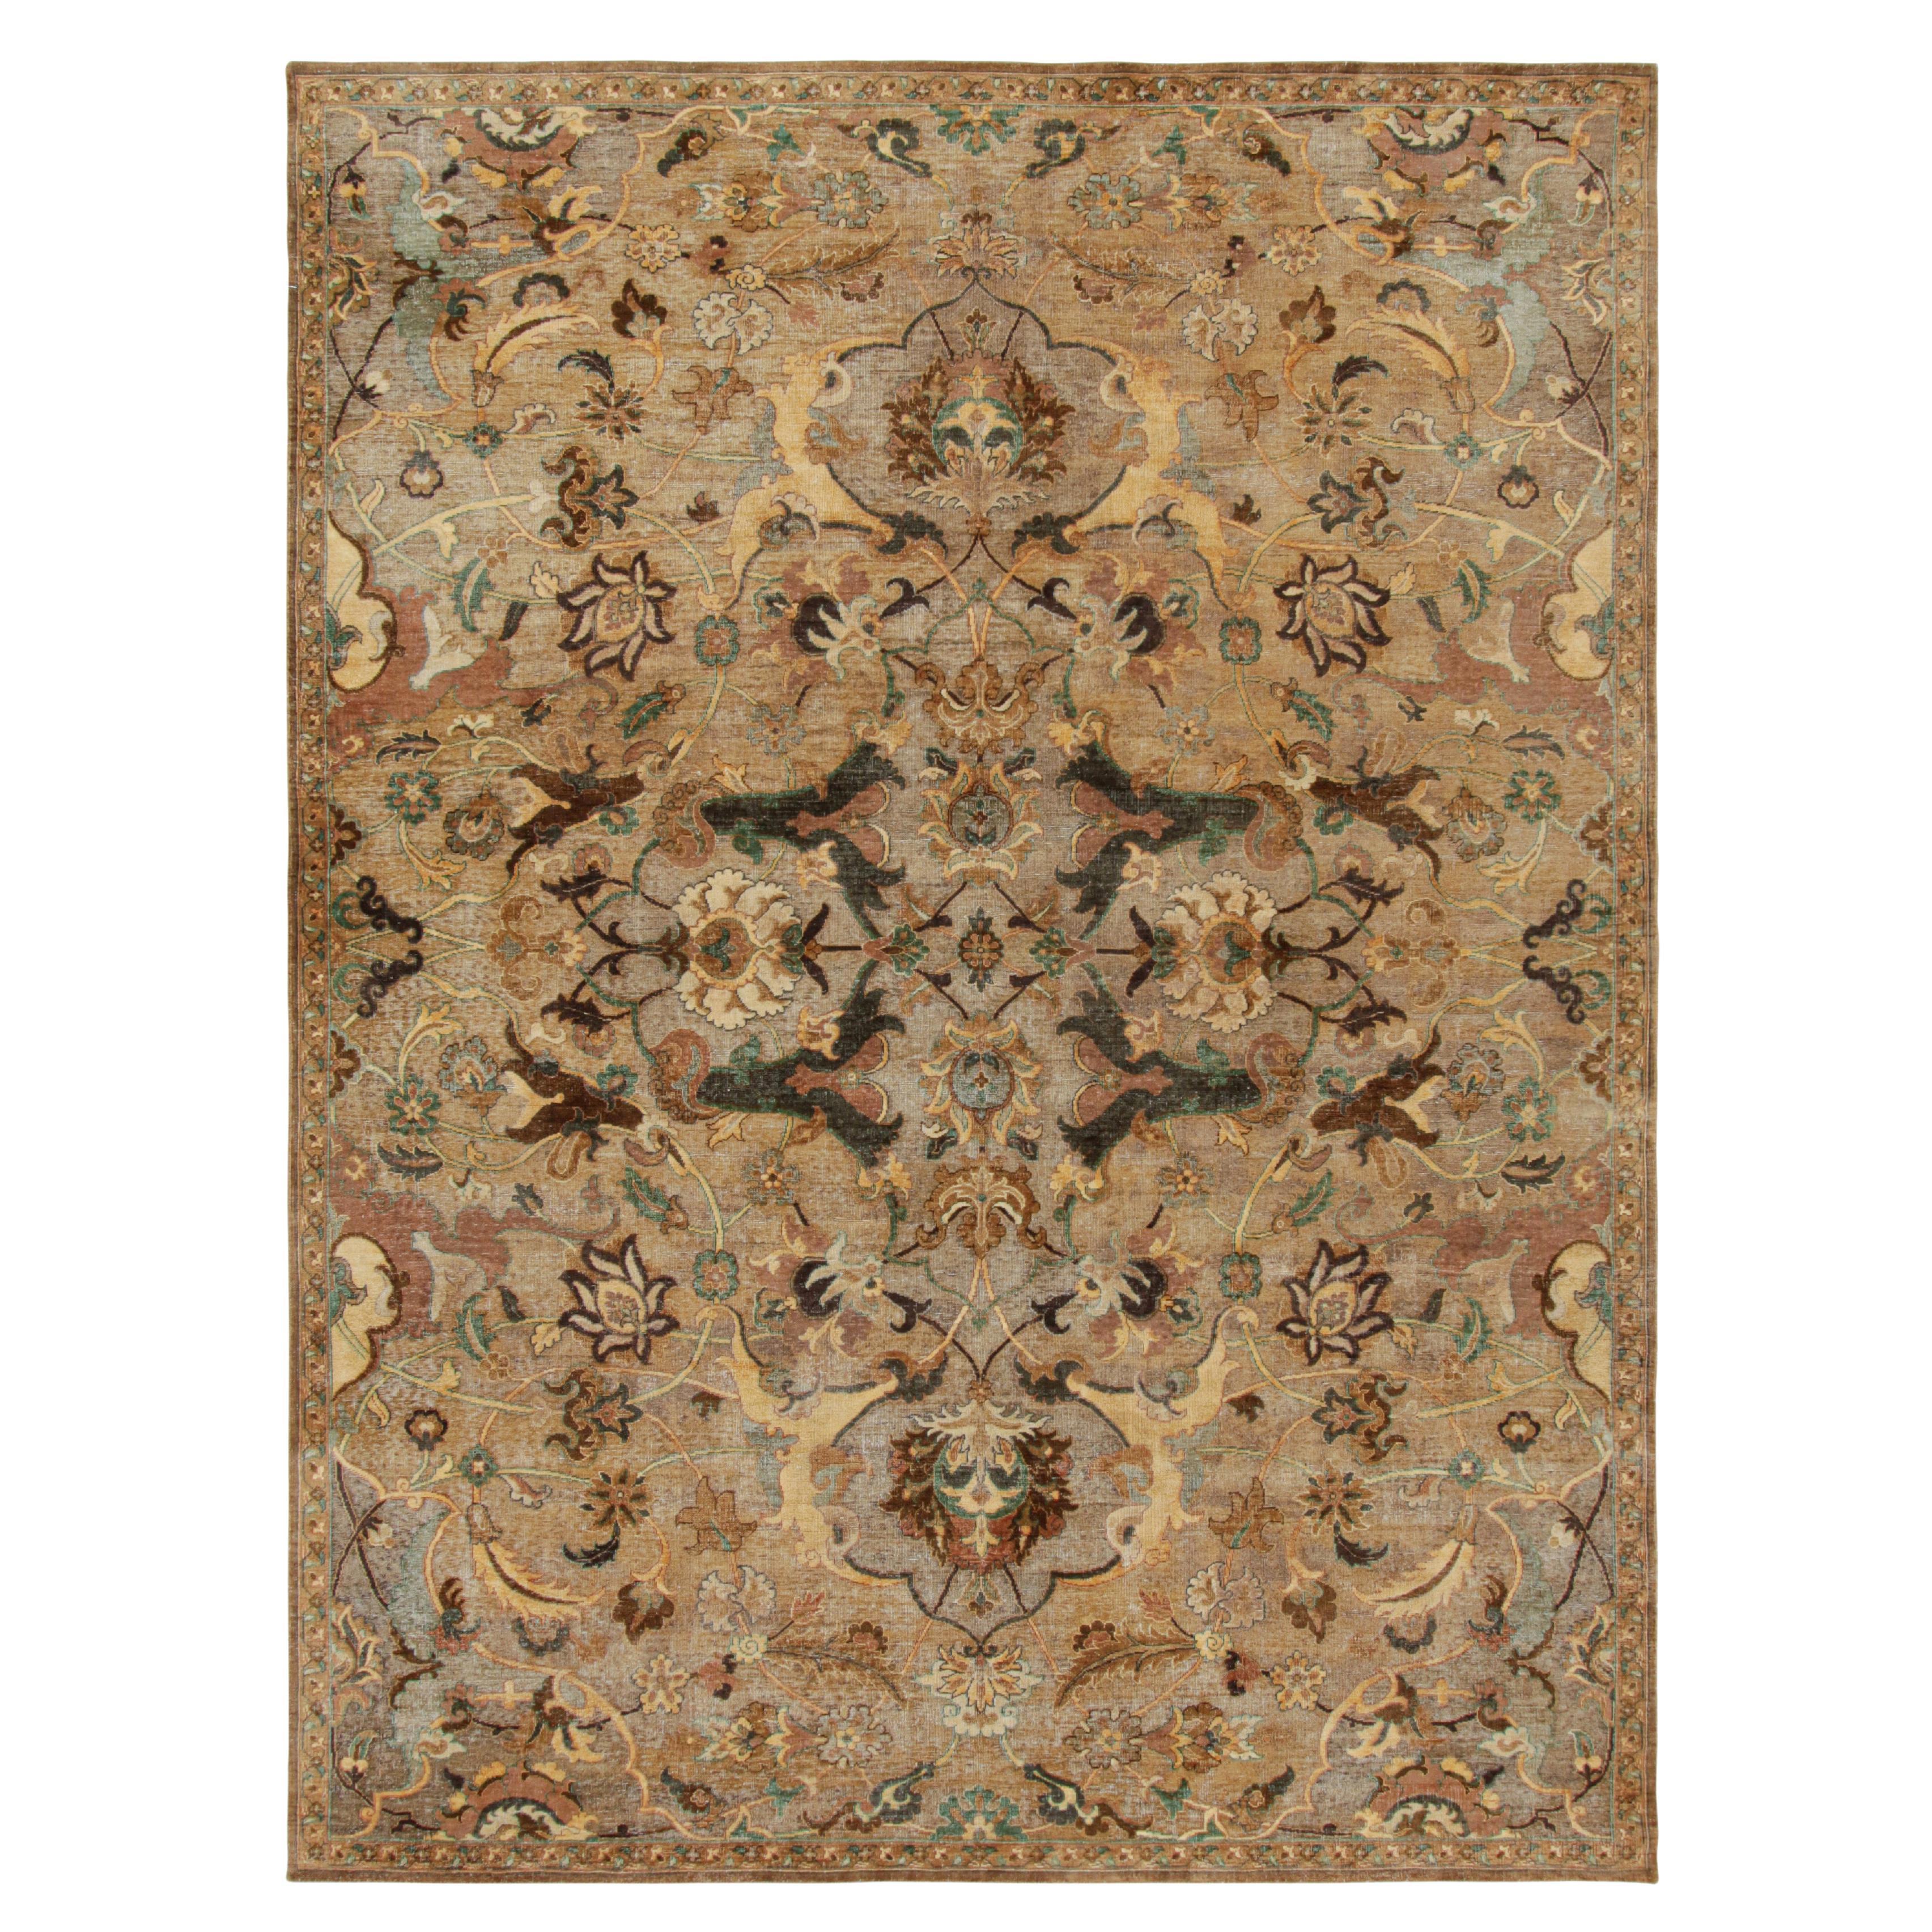 Rug & Kilim's Polonaise Style Teppich in Brown-Beige mit Blumenmustern